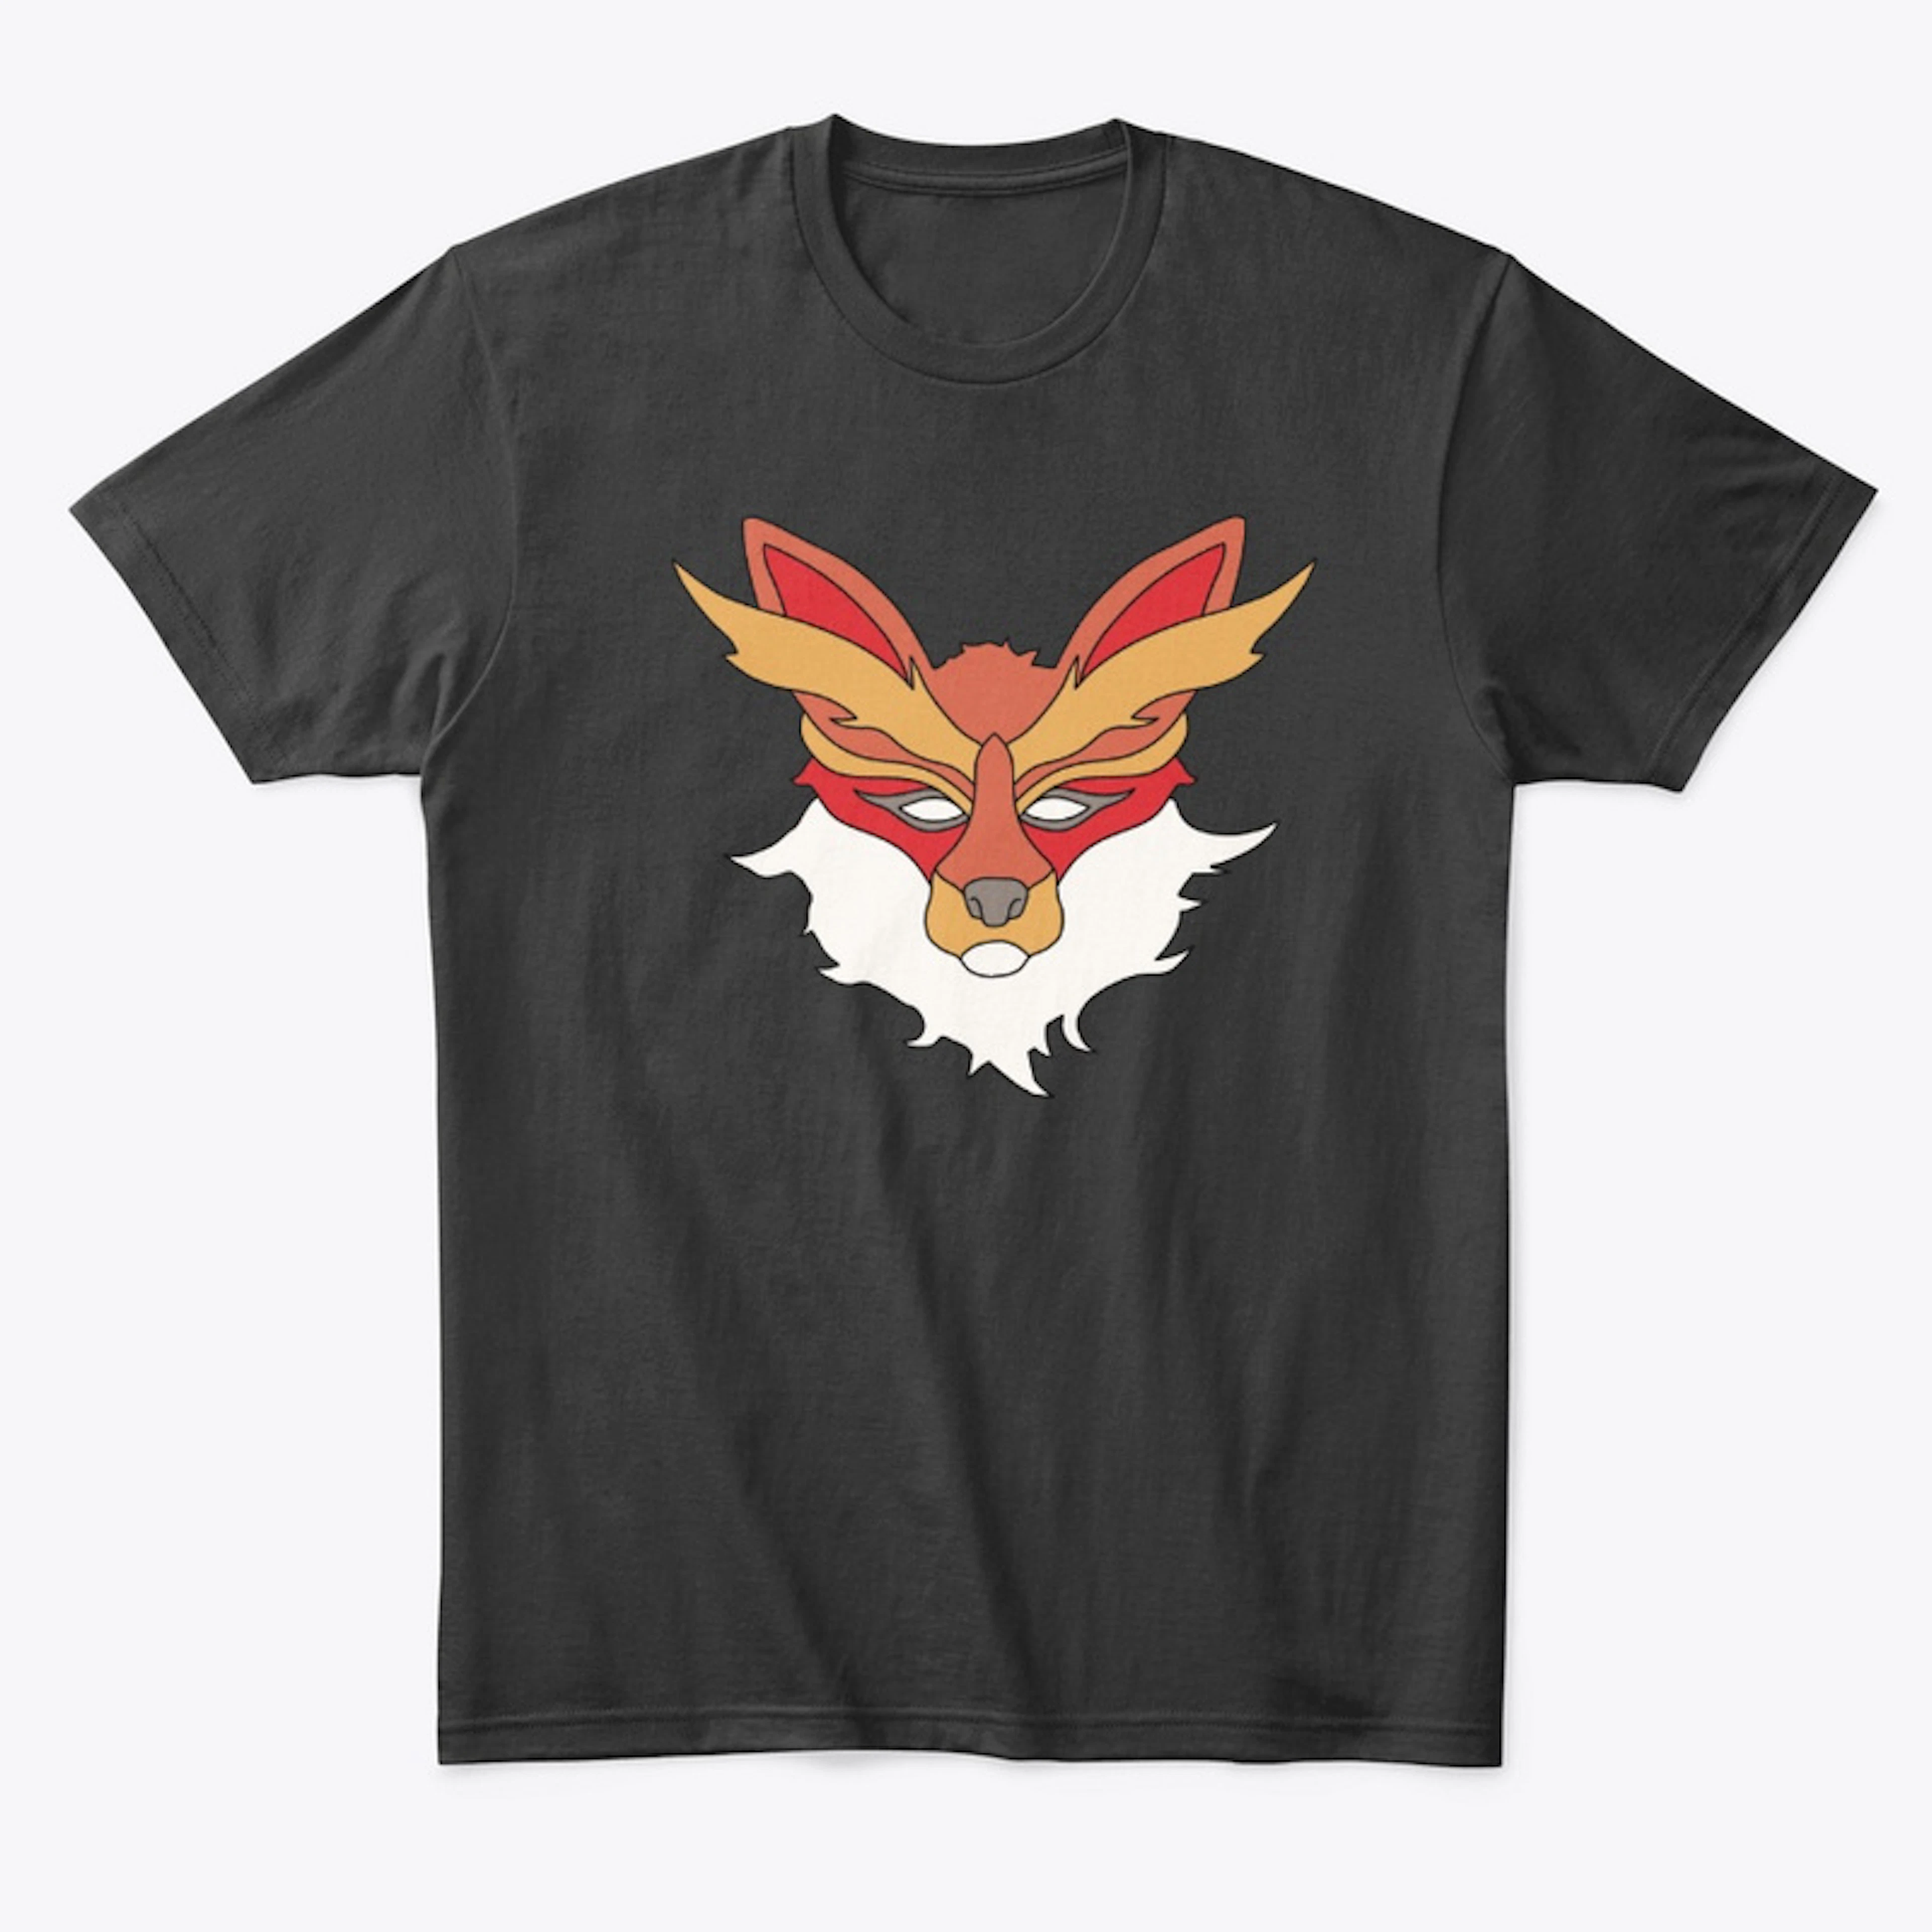 The Fox of WereINK